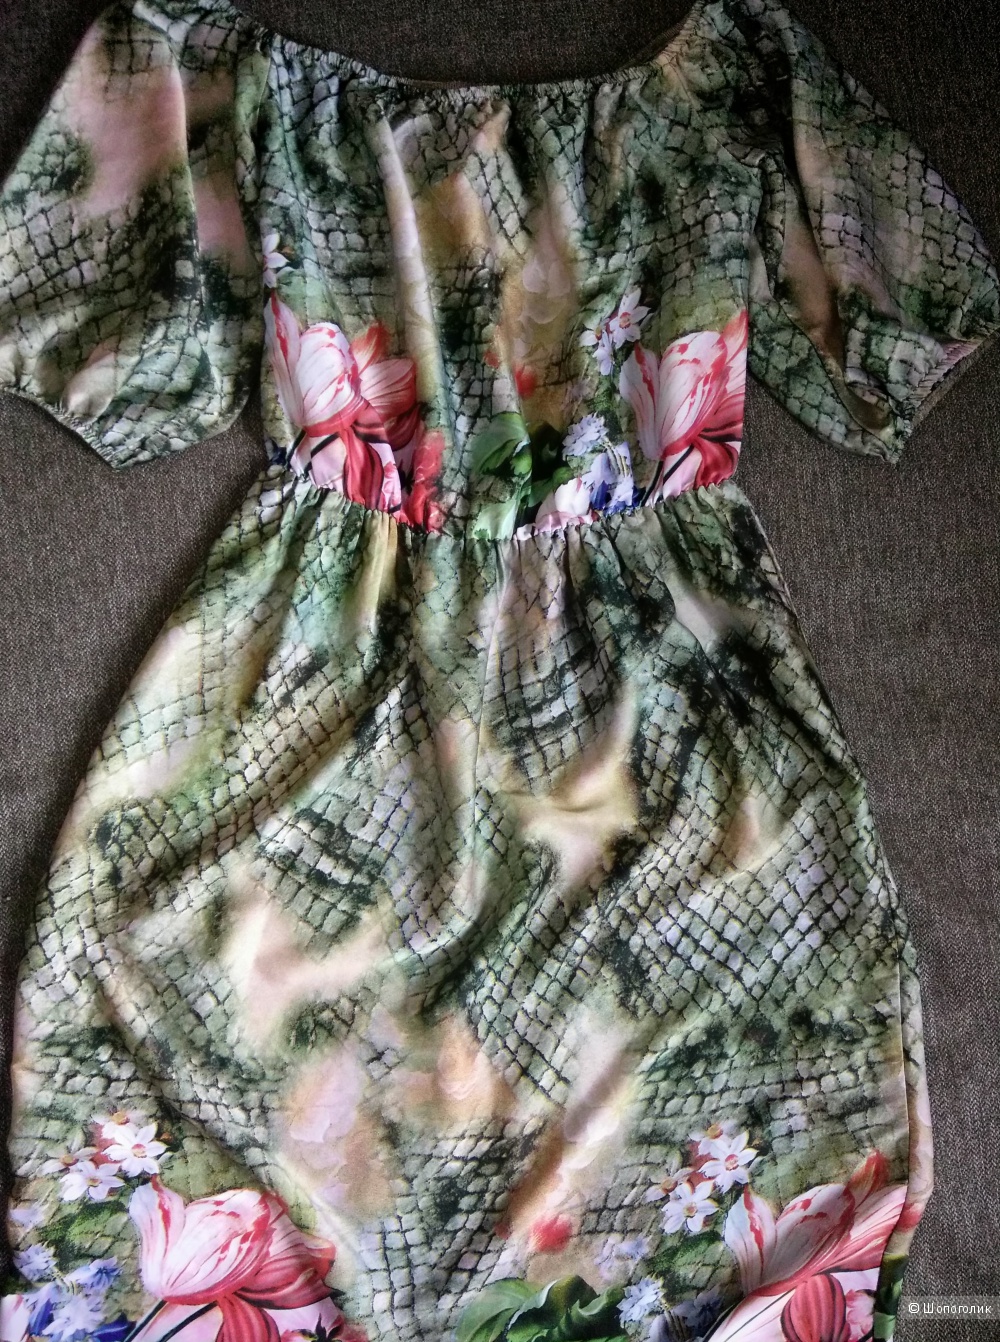 Шелковое платье Elza 46-48 размер